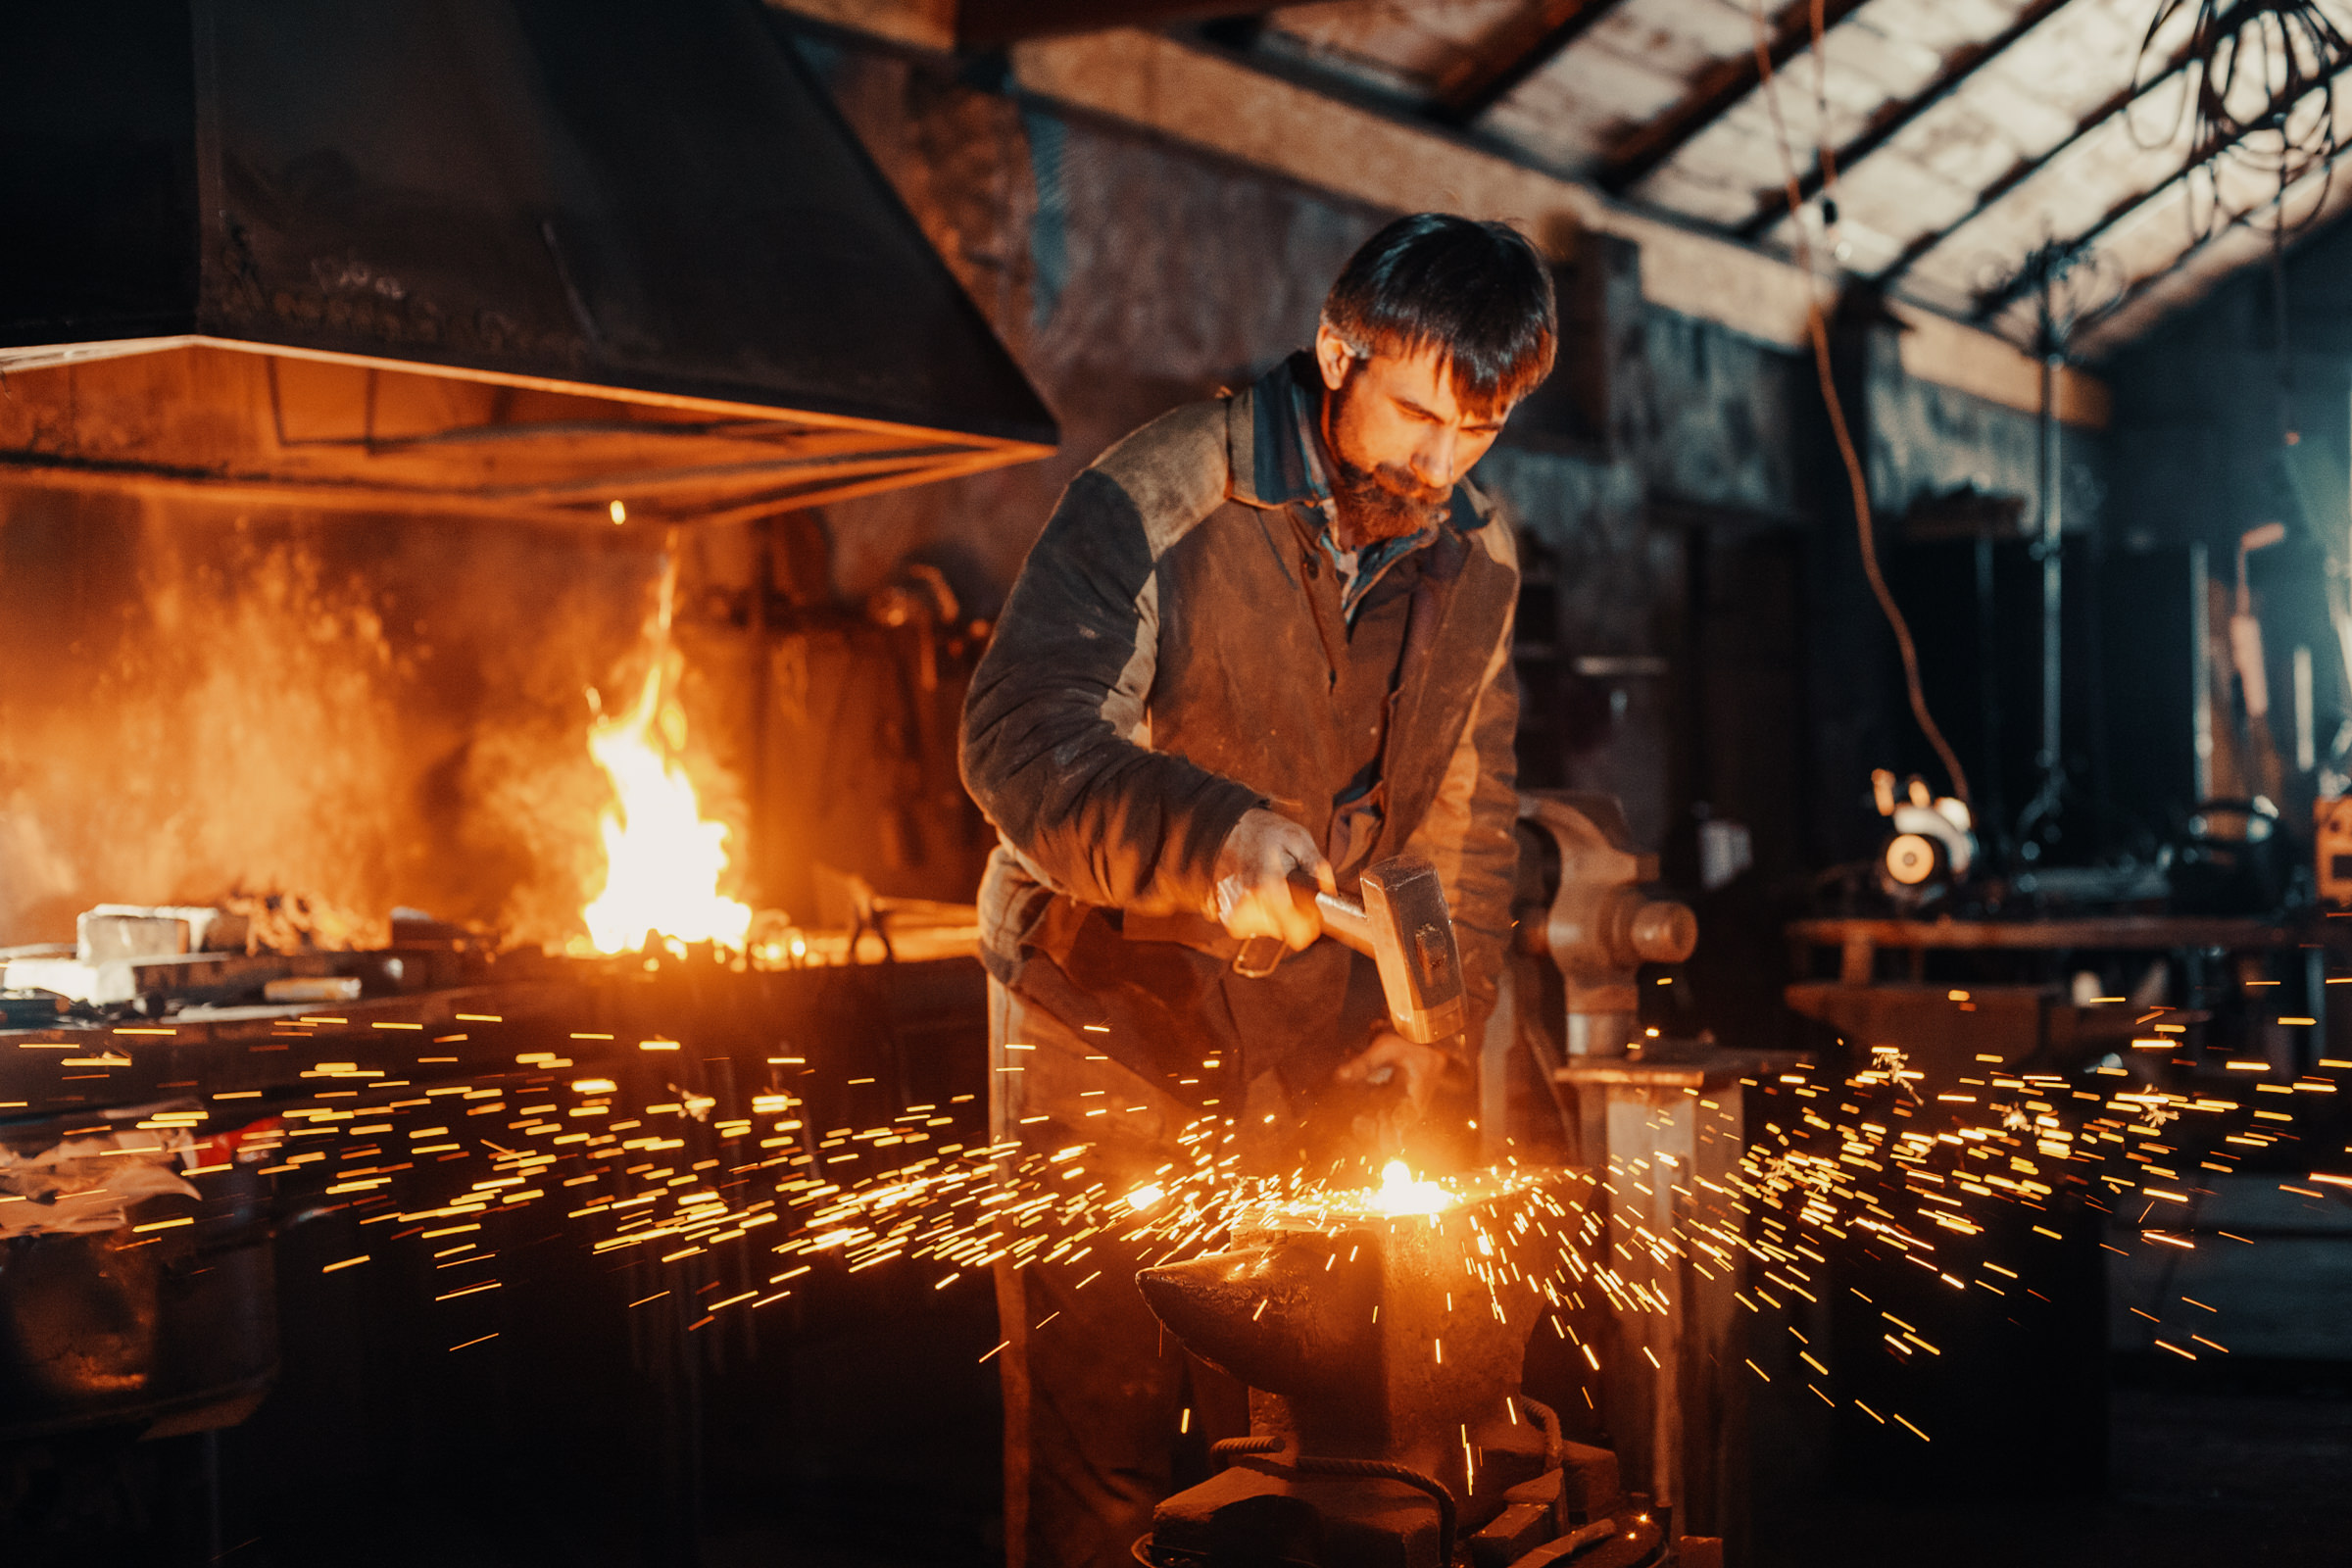 Фотография кузнеца за работой в кузнечном цеху возле наковальни с разлетающимися огненными искрами во время ковки металлической детали